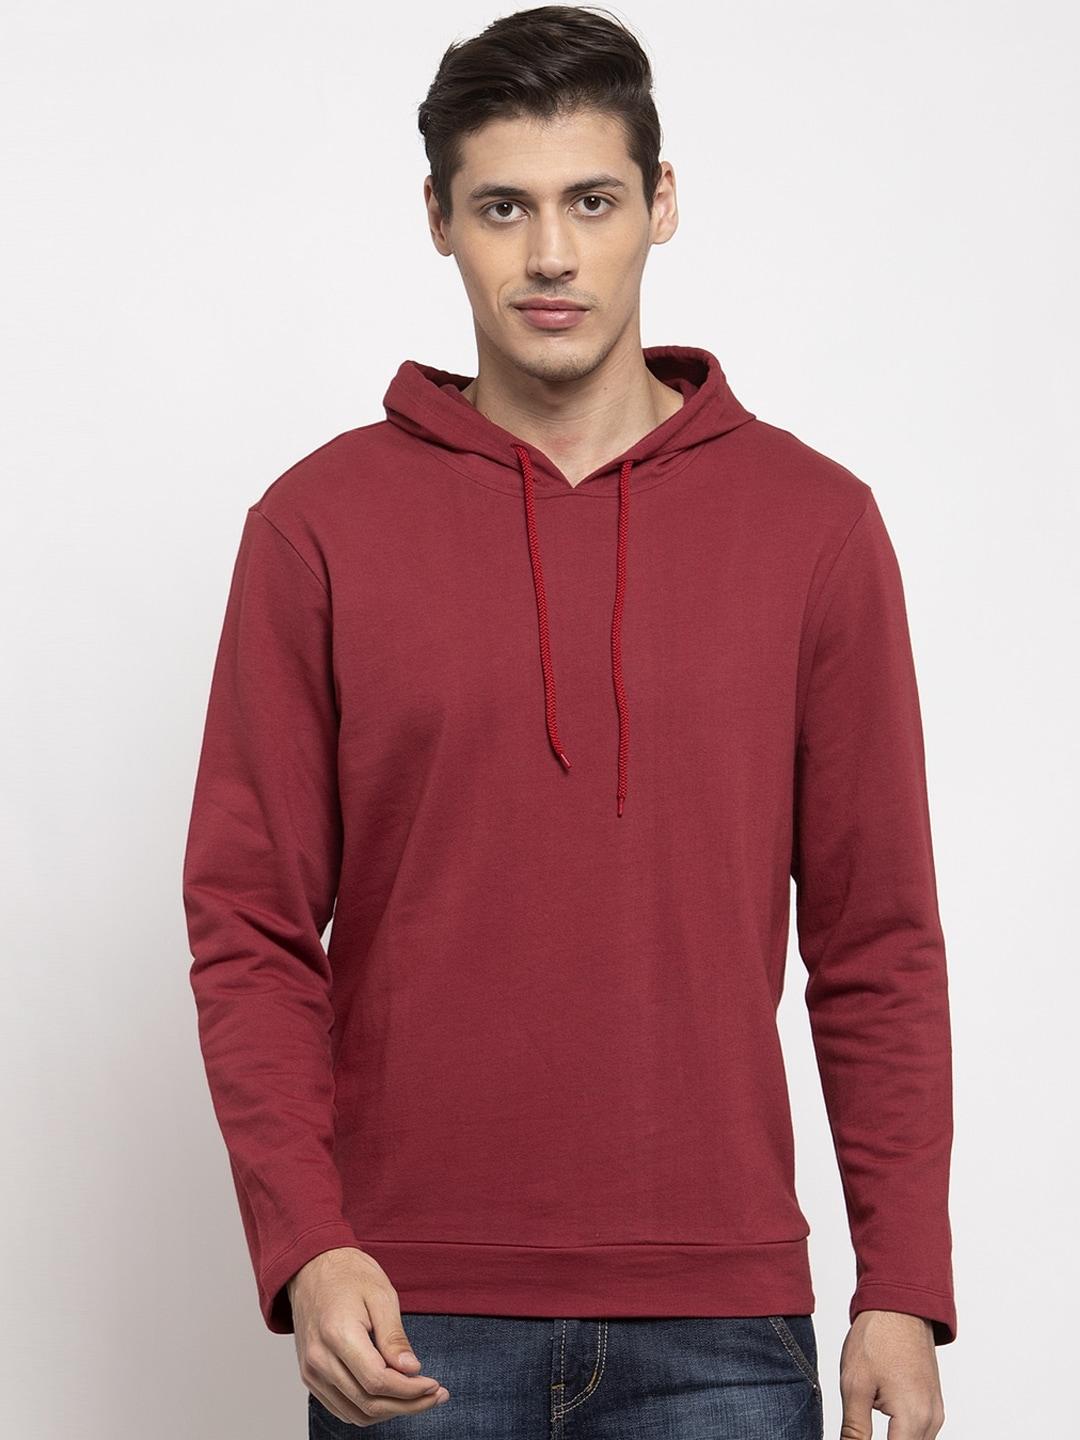 door74-men-maroon-hooded-sweatshirt